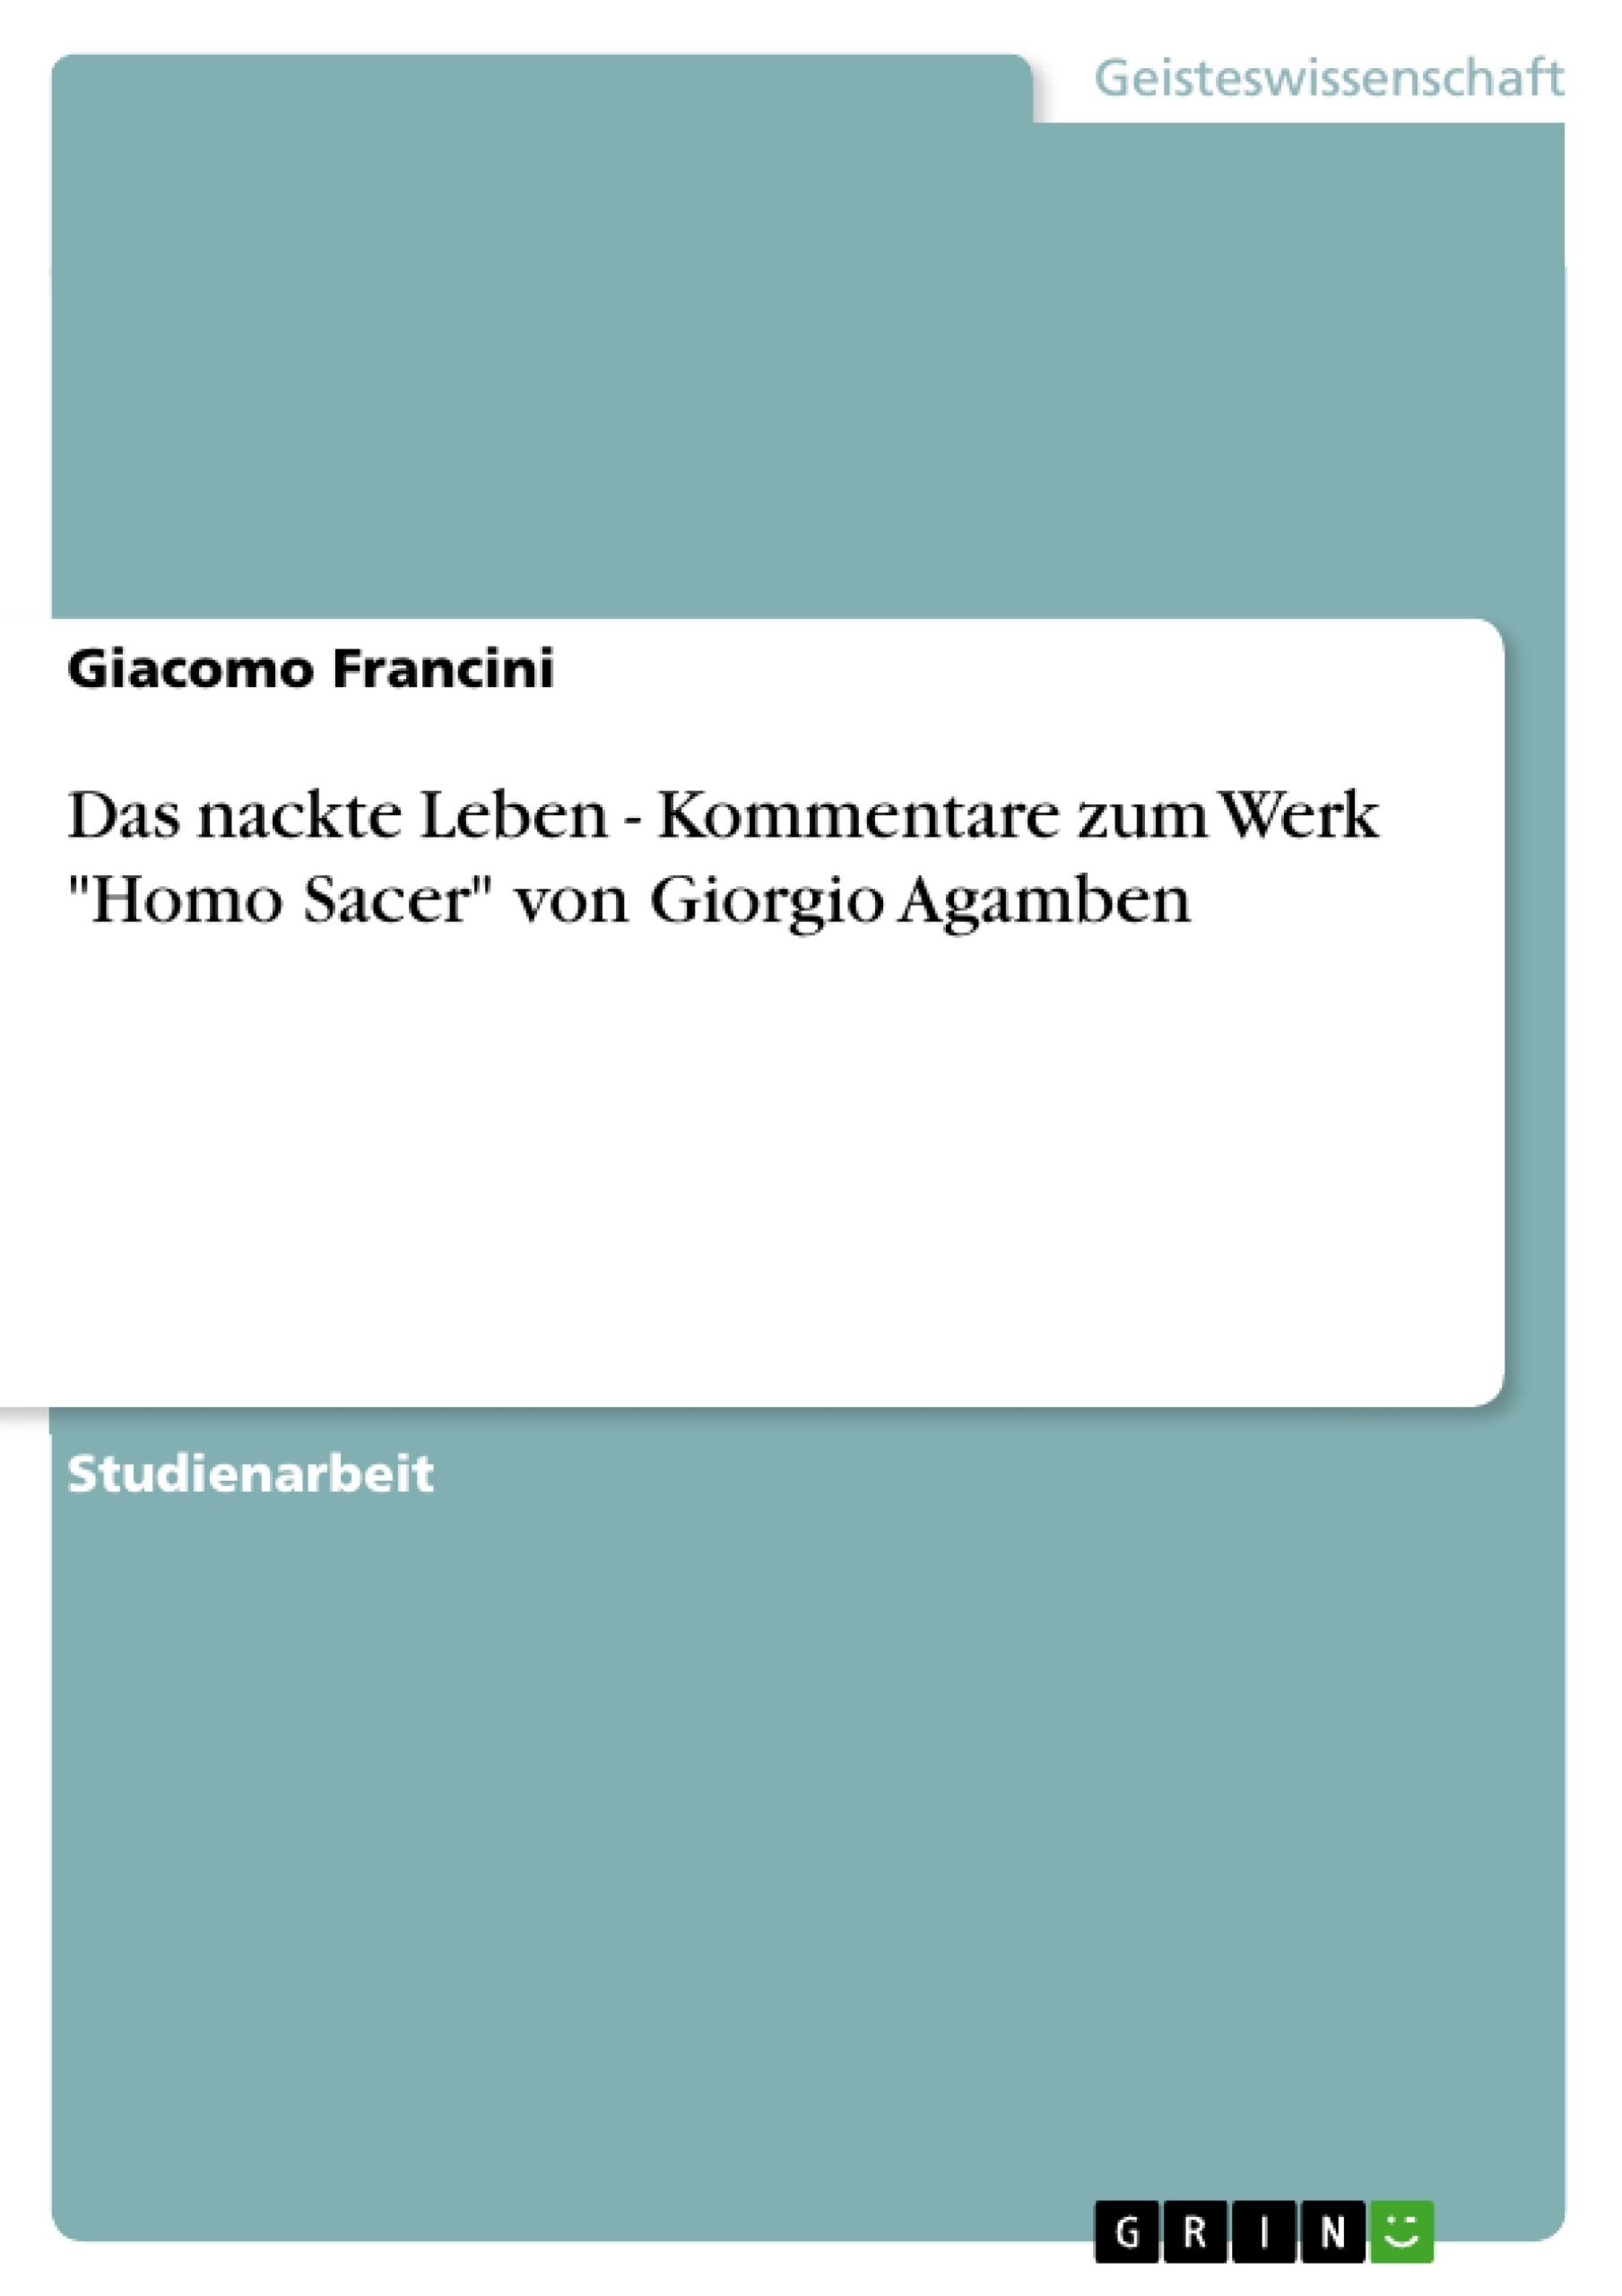 Título: Das nackte Leben - Kommentare zum Werk "Homo Sacer" von Giorgio Agamben